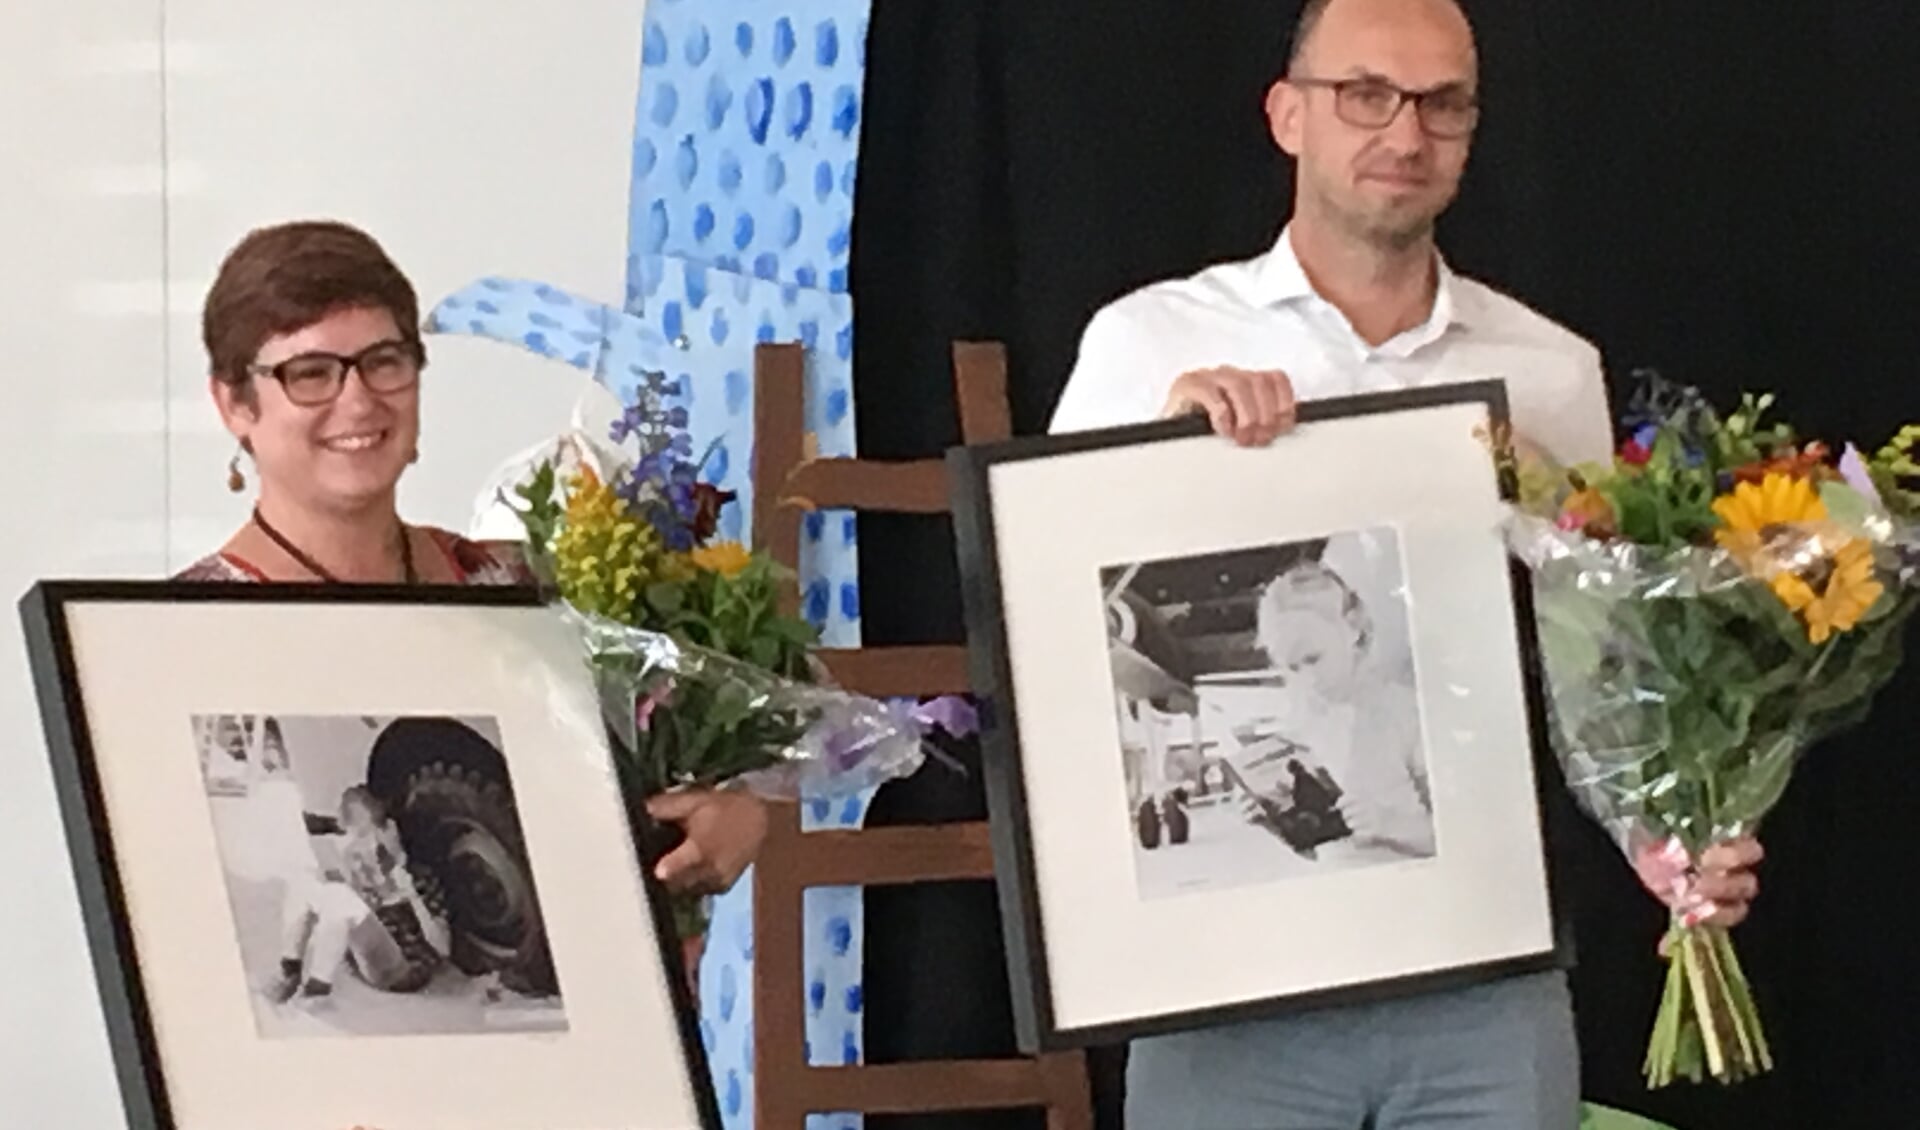 De prijswinnaars Simone Foekens(l) en Rijk Arends (r)